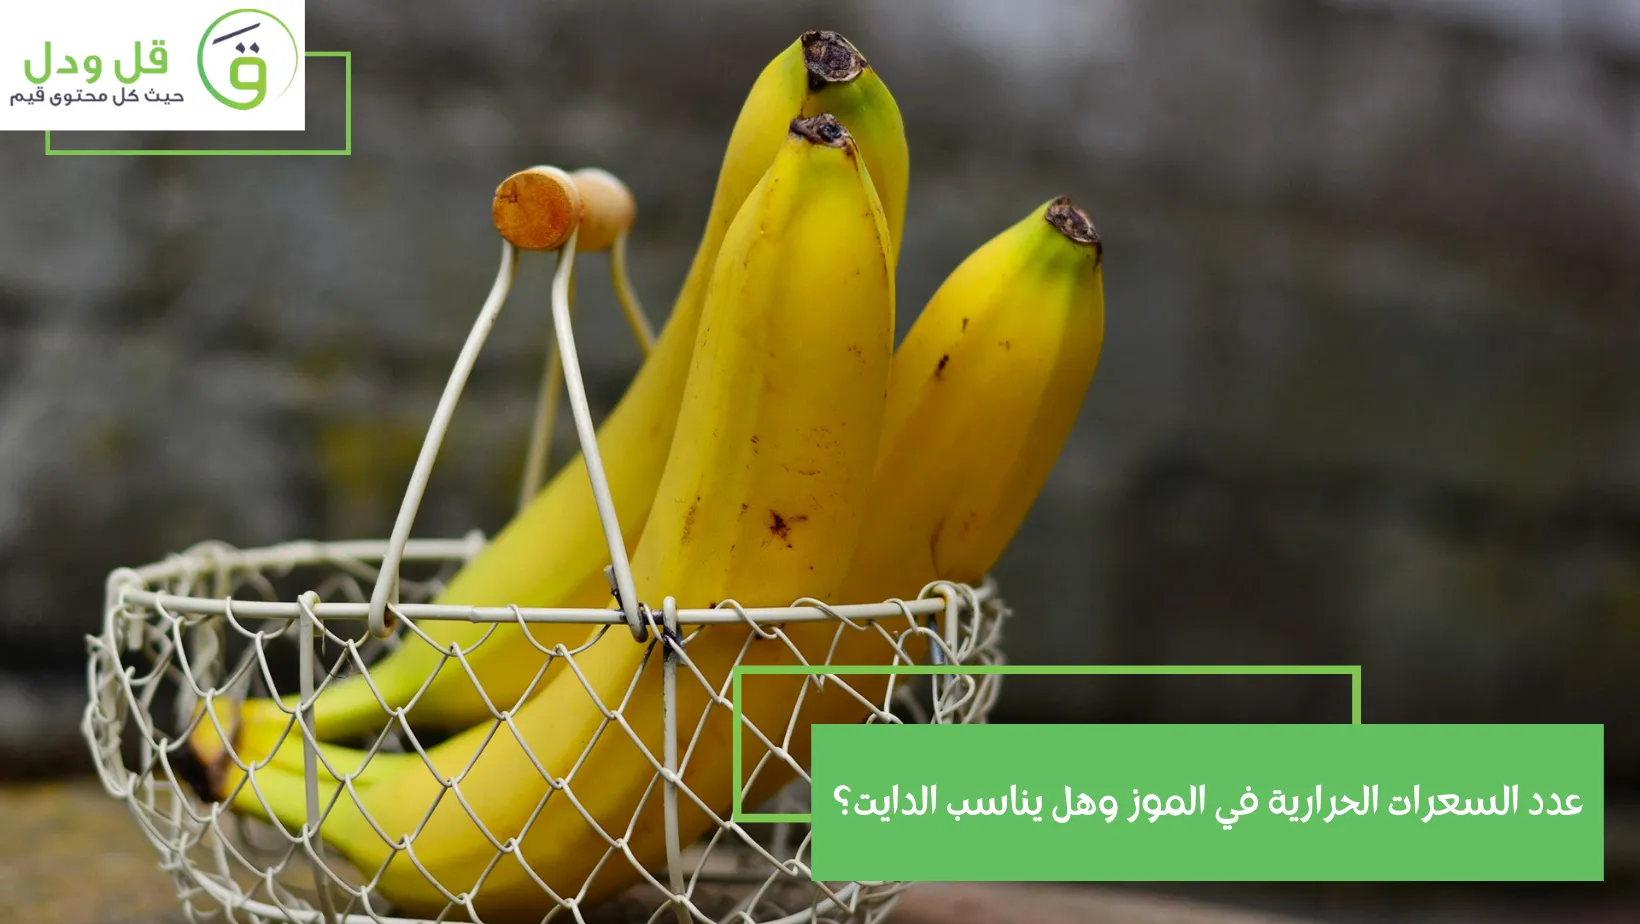 عدد السعرات الحرارية في الموز وهل يناسب الدايت؟